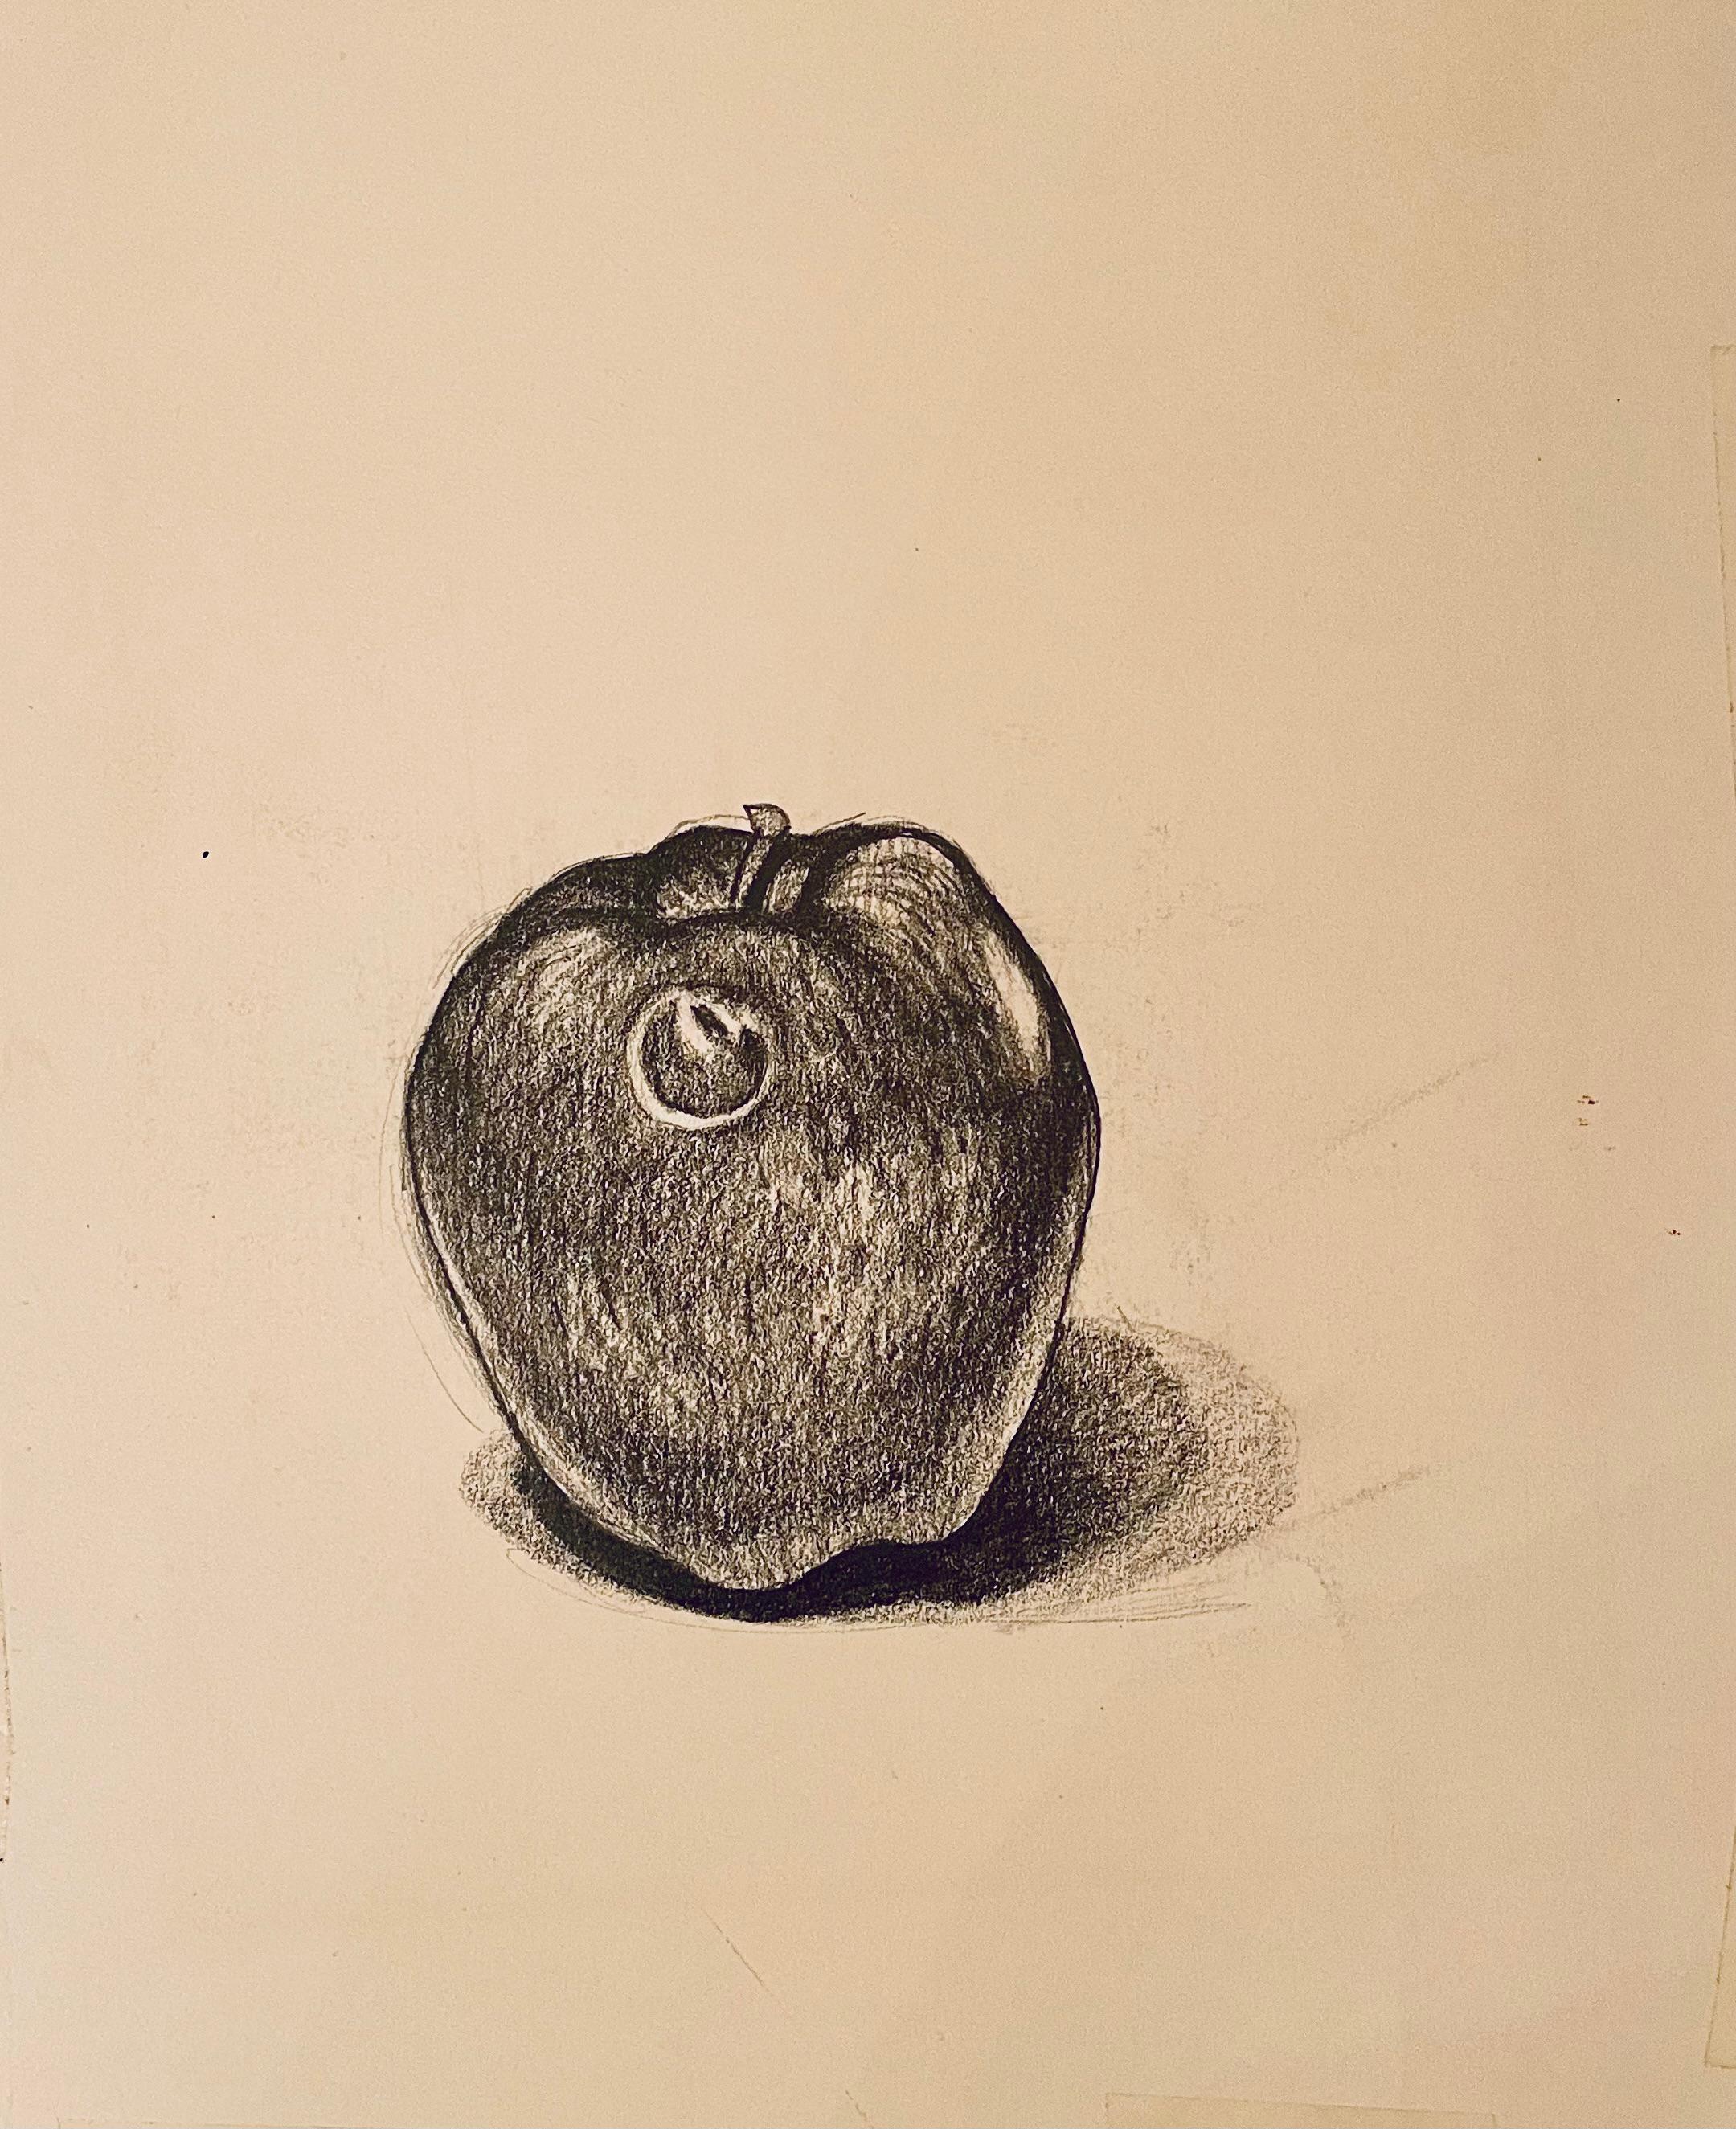 (Apfelstudie) Ohne Titel, 1985, Ian Hornak - Zeichnung